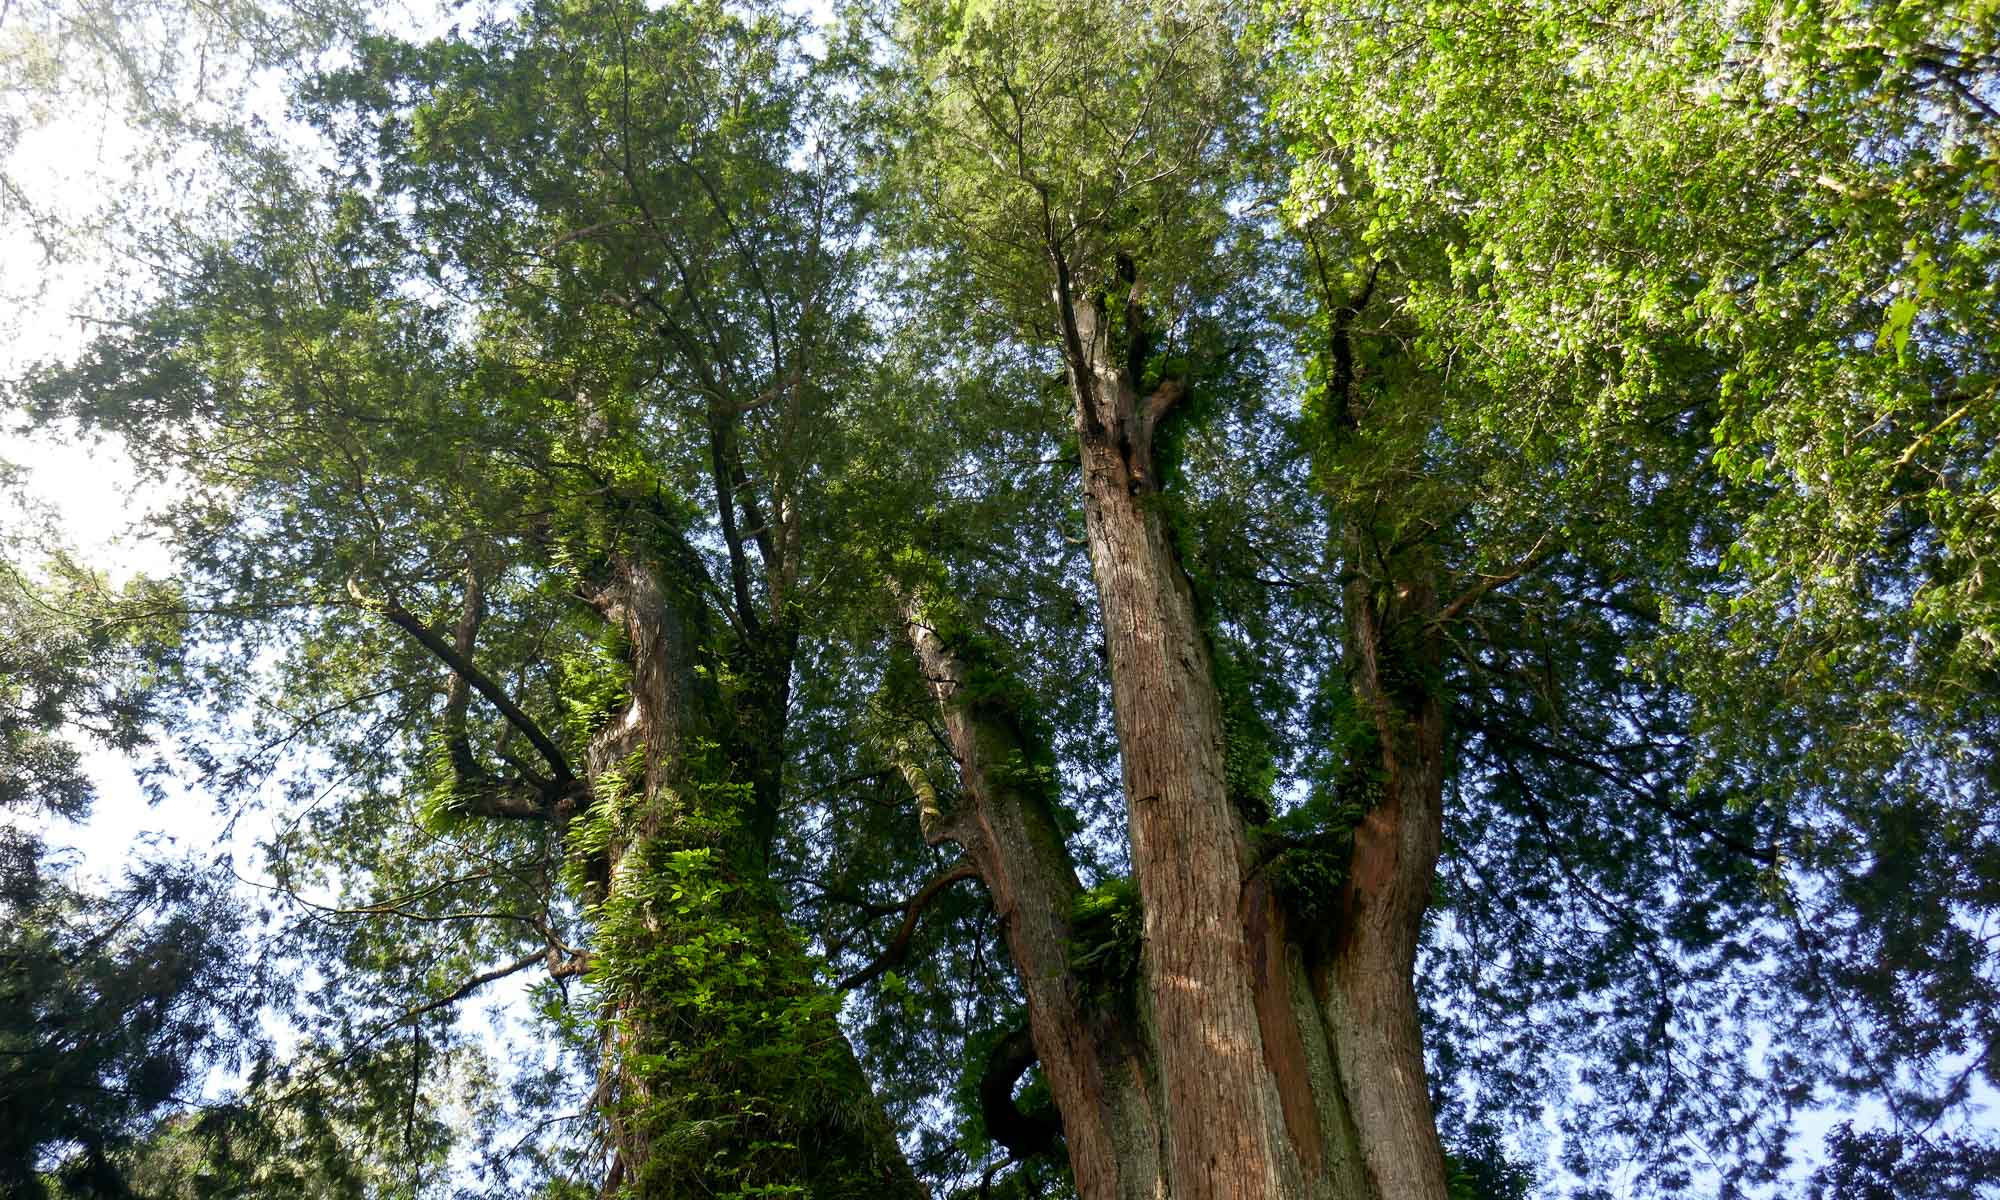 Giant trees